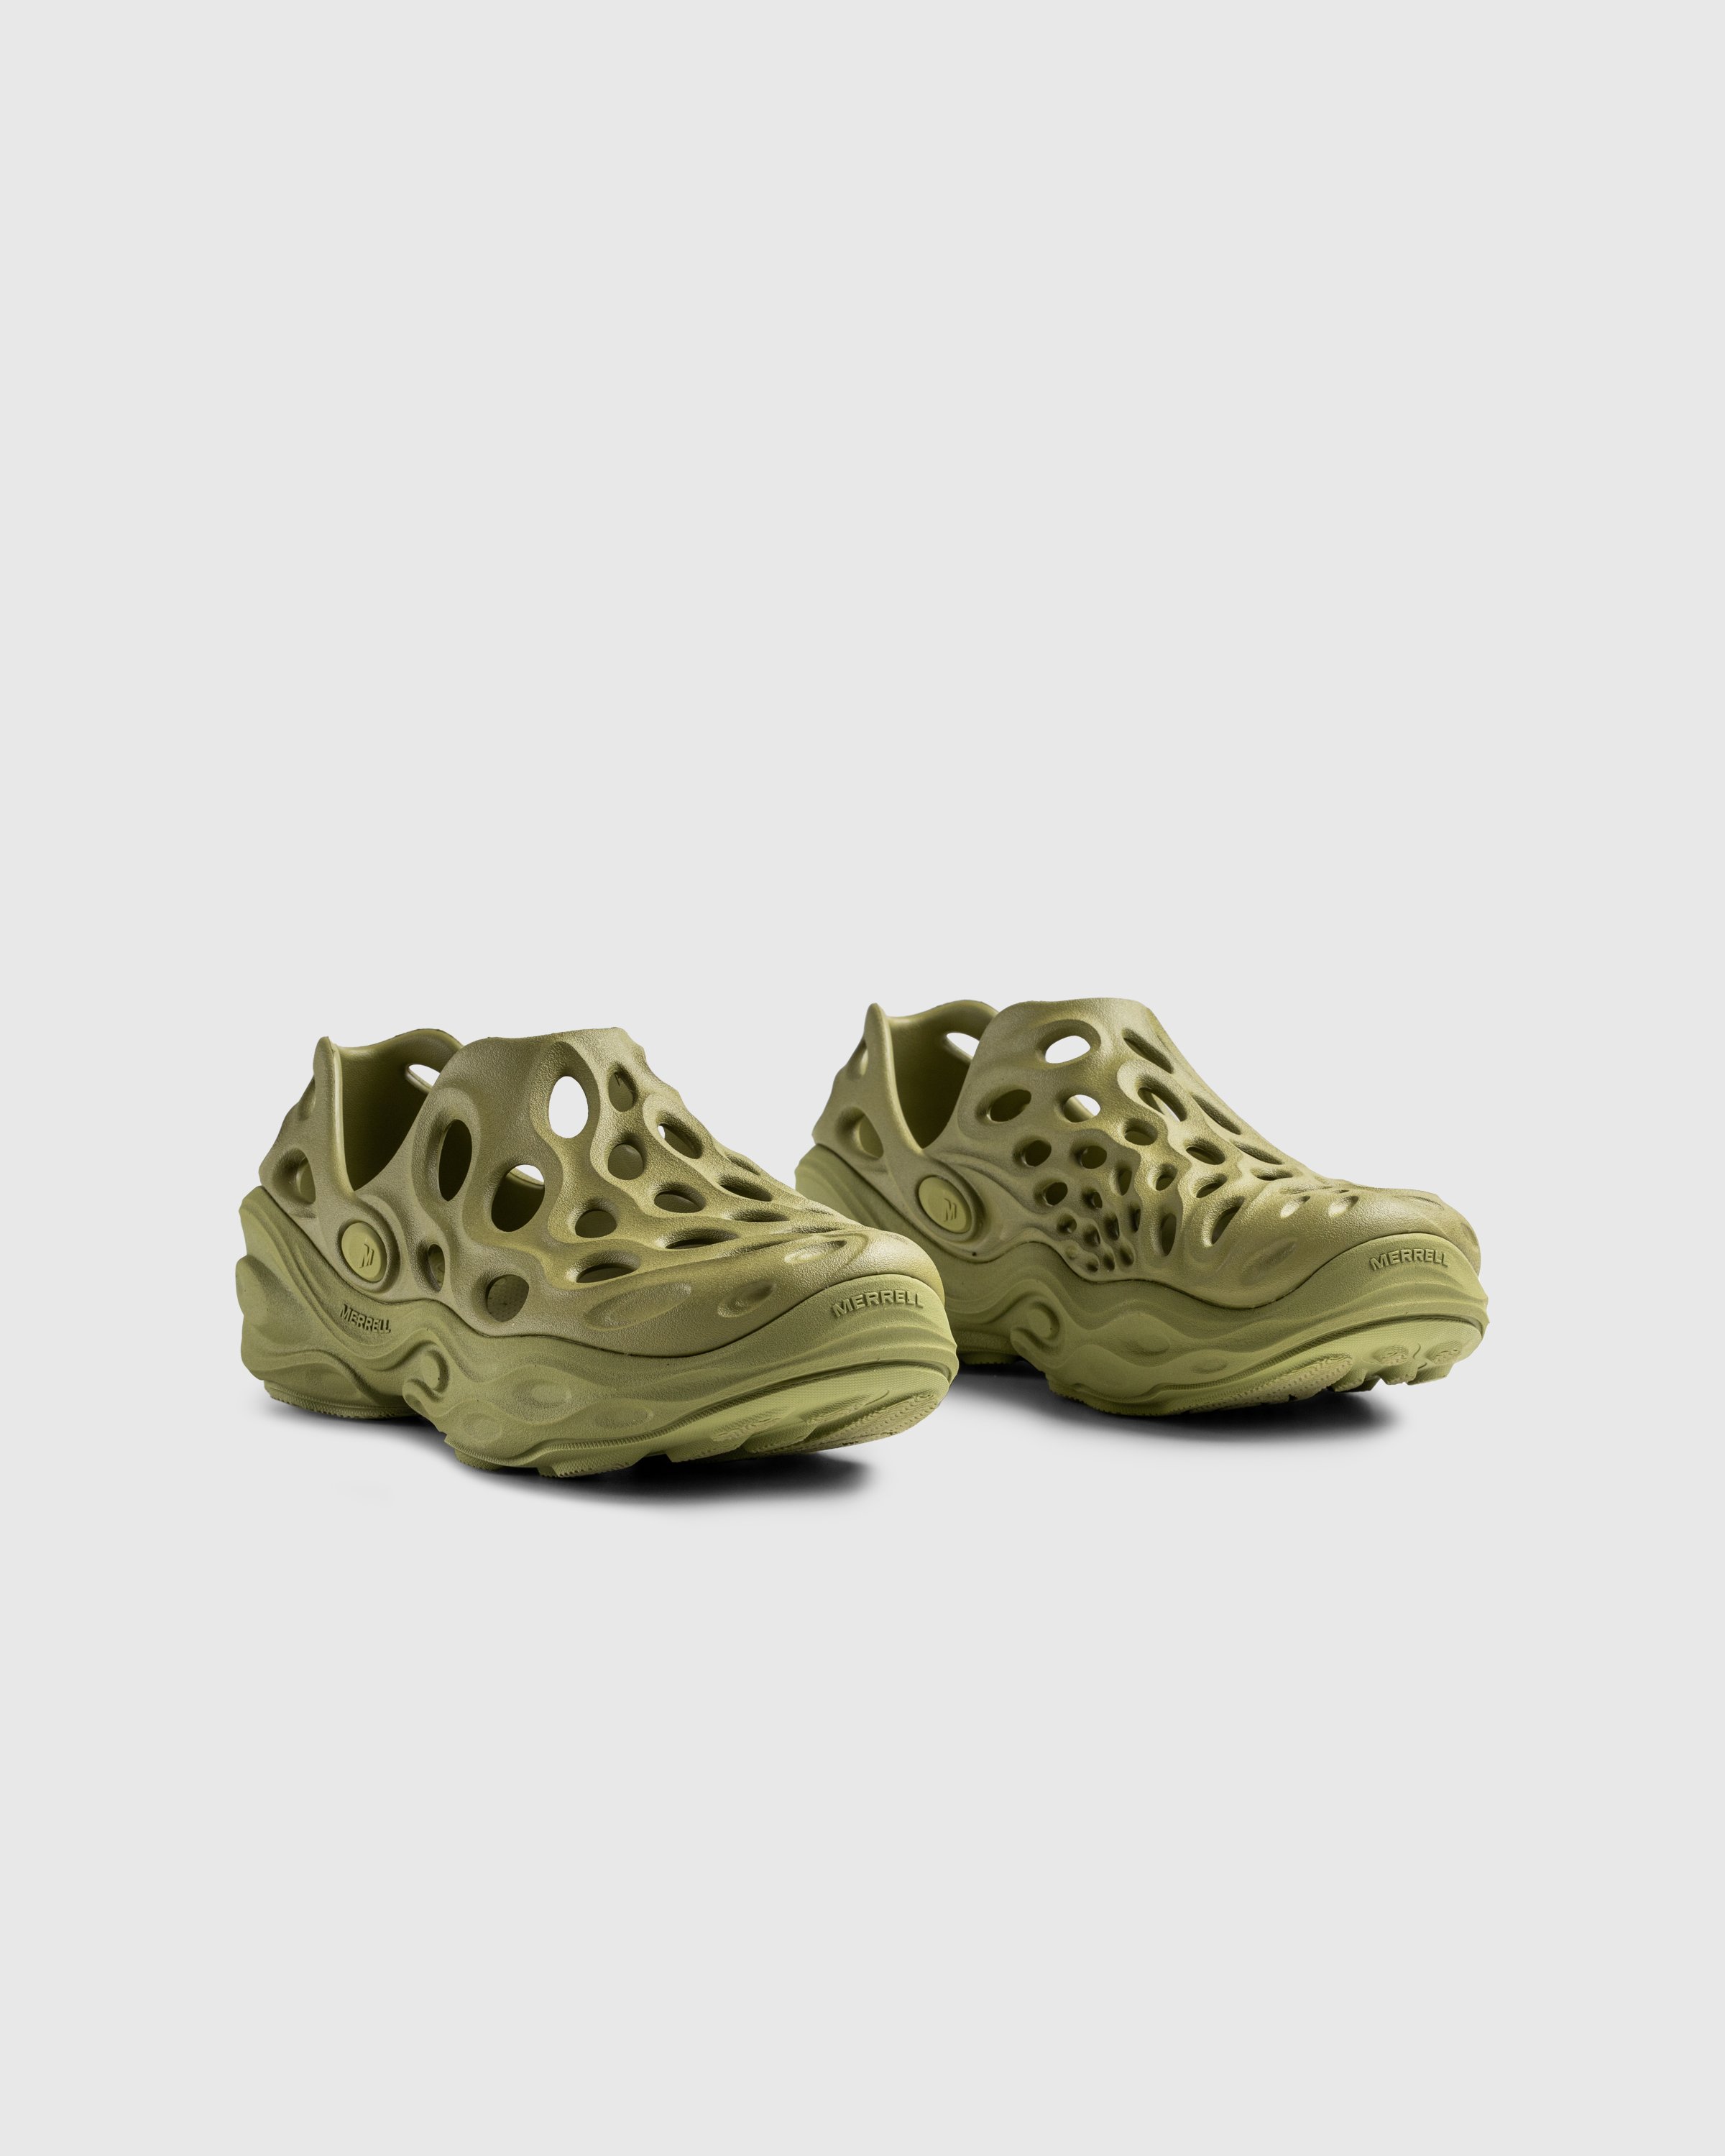 Merrell - HYDRO NEXT GEN MOC SE/TRIPLE MOSSTONE - Footwear - Green - Image 3